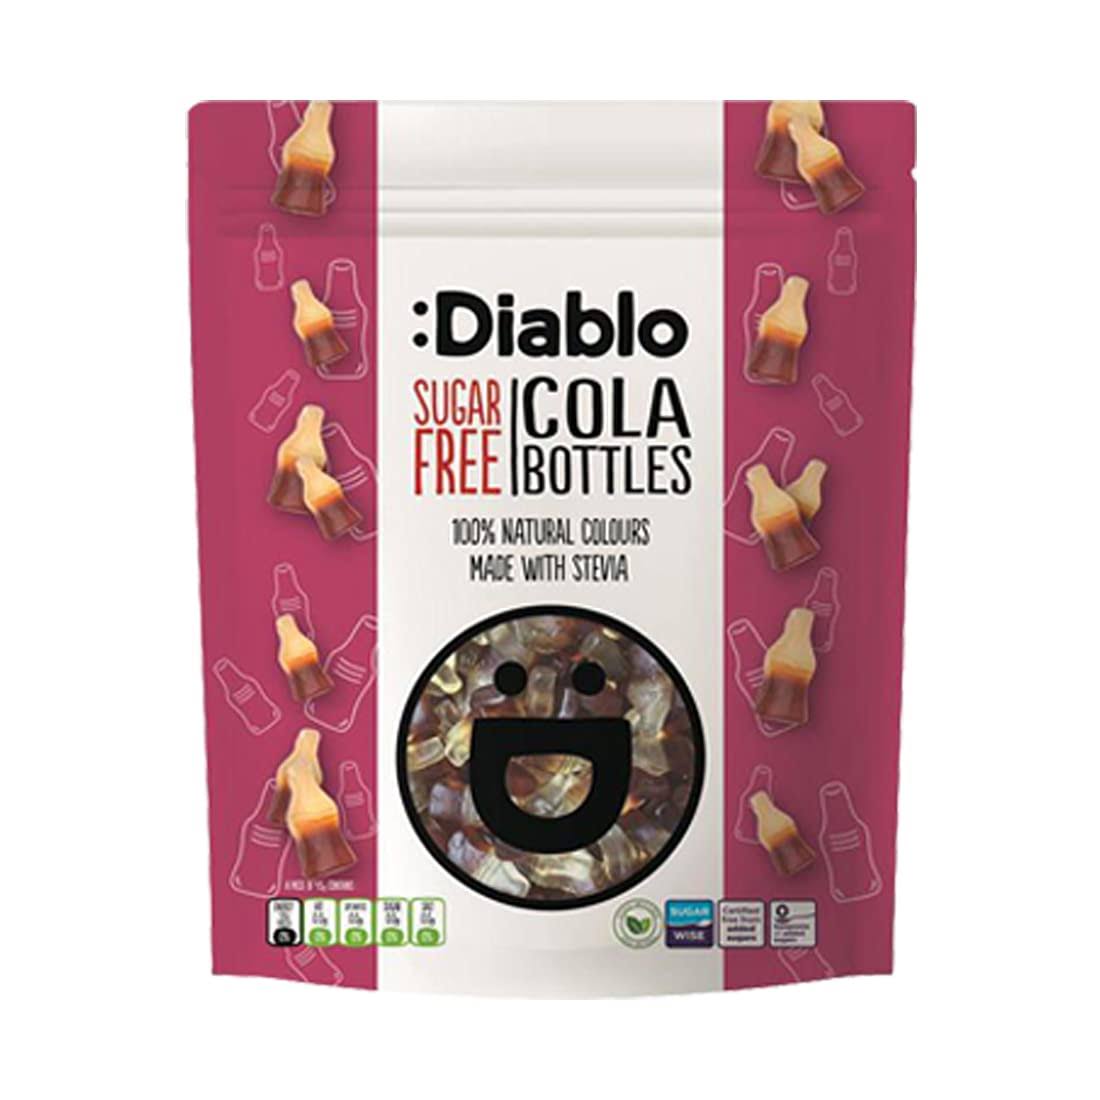 Diablo Sugar Free Cola Bottles 75g (4 minimum)